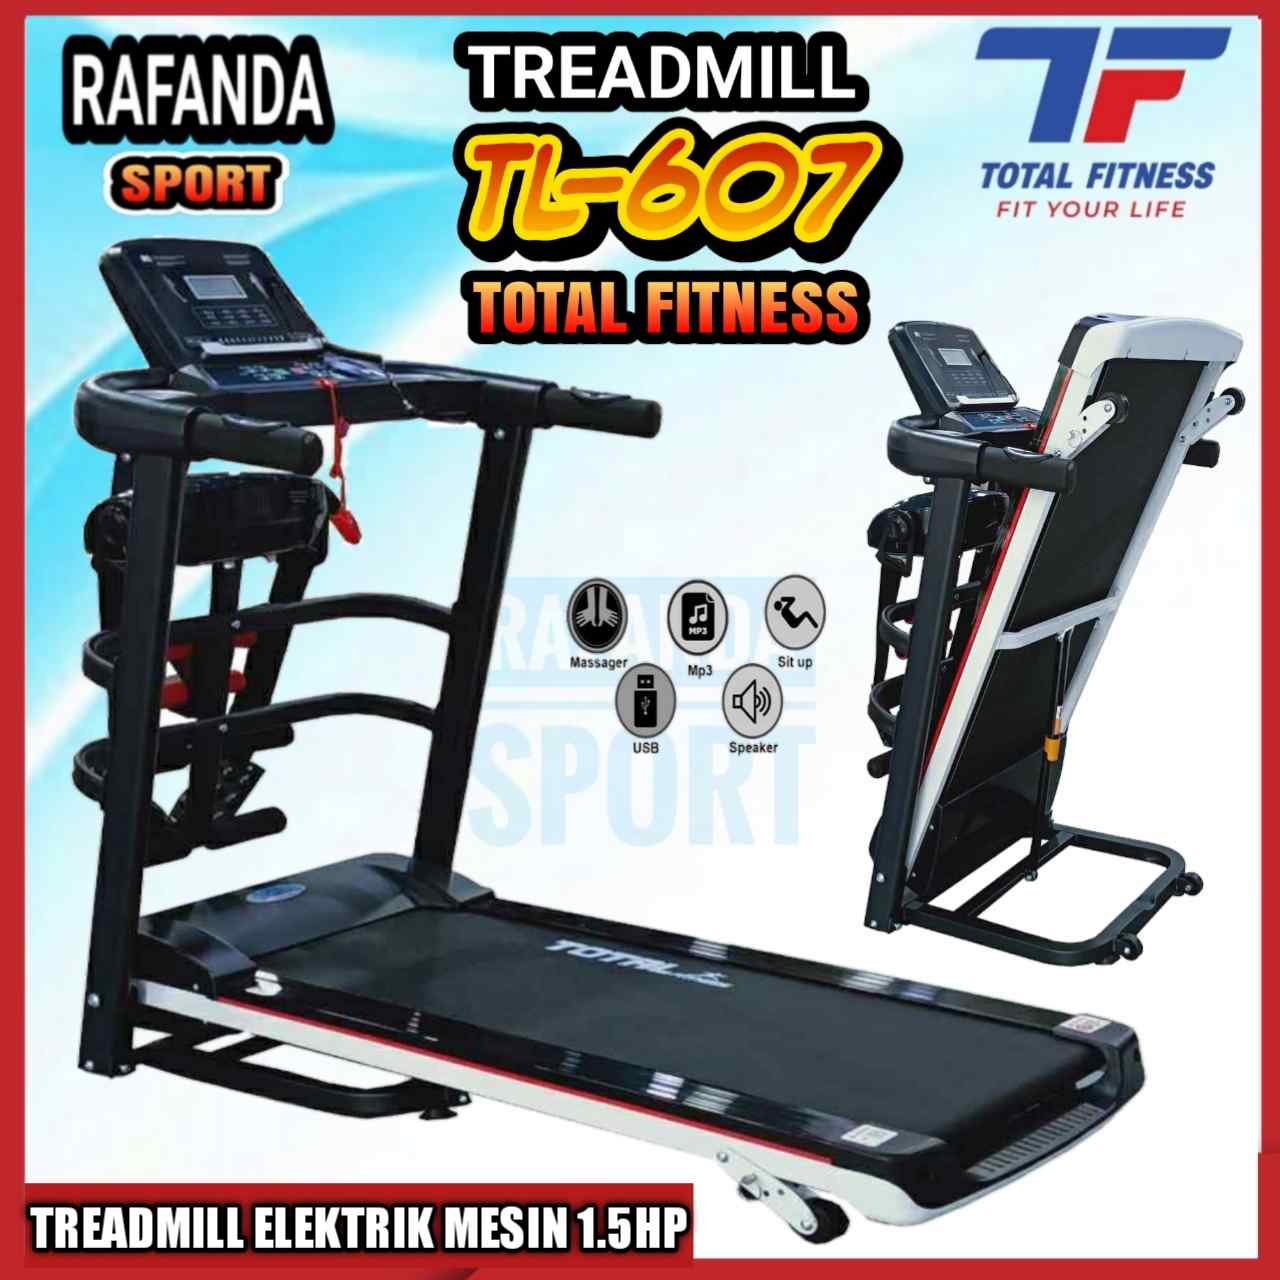 Treadmill_tl607totalfitness_rafandasport